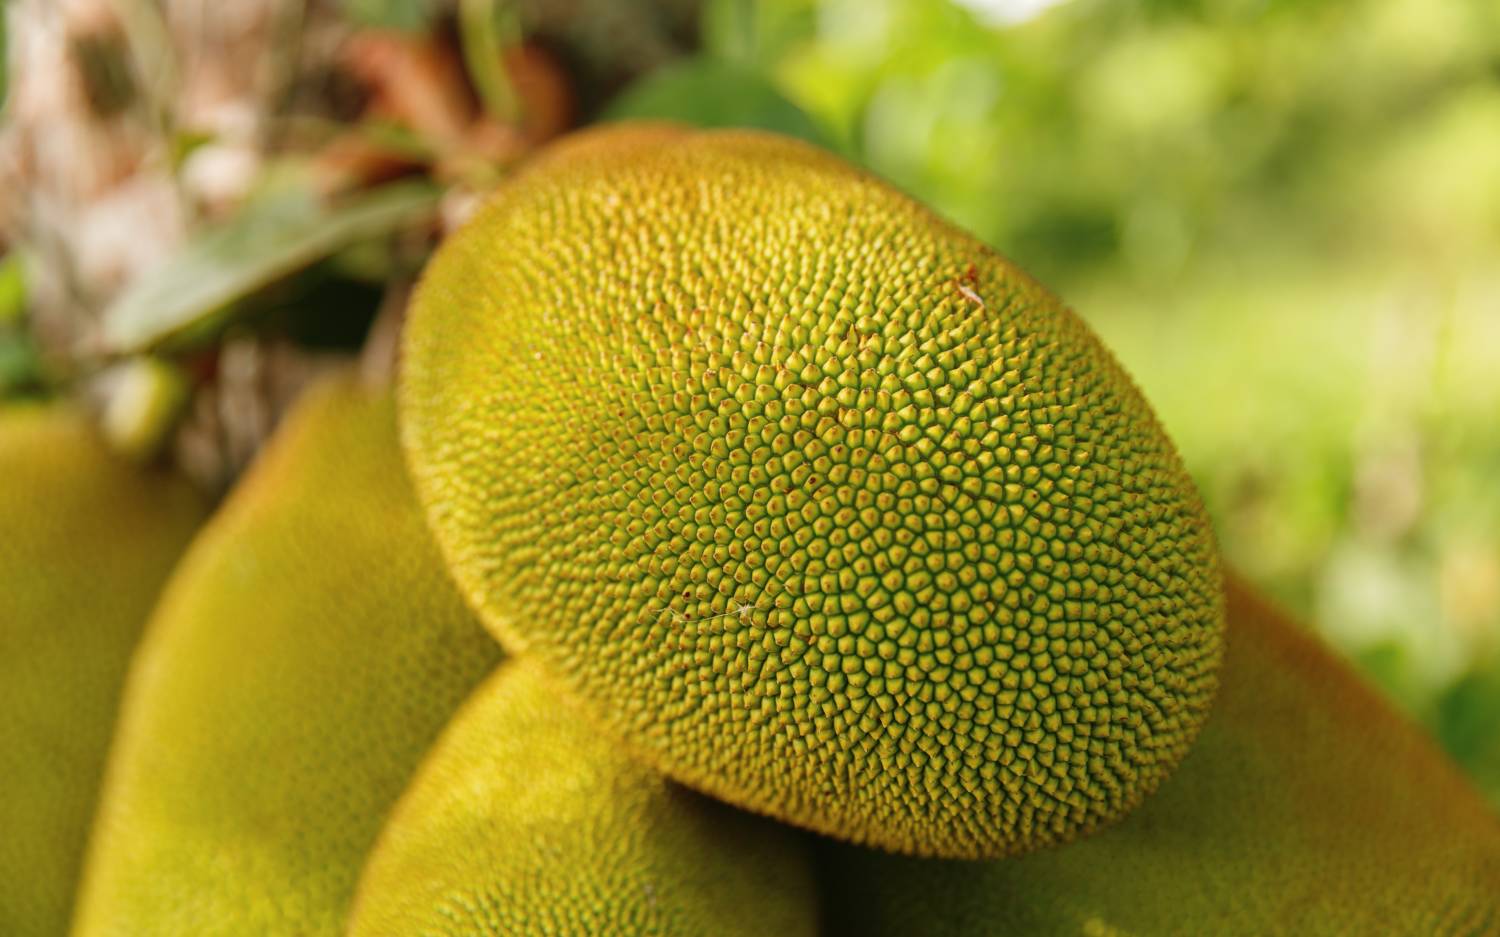 Jackfruit als Fleischersatz im Lam Vegan: Probieren lohnt sich / ©Unsplash/Rakeem Burrell